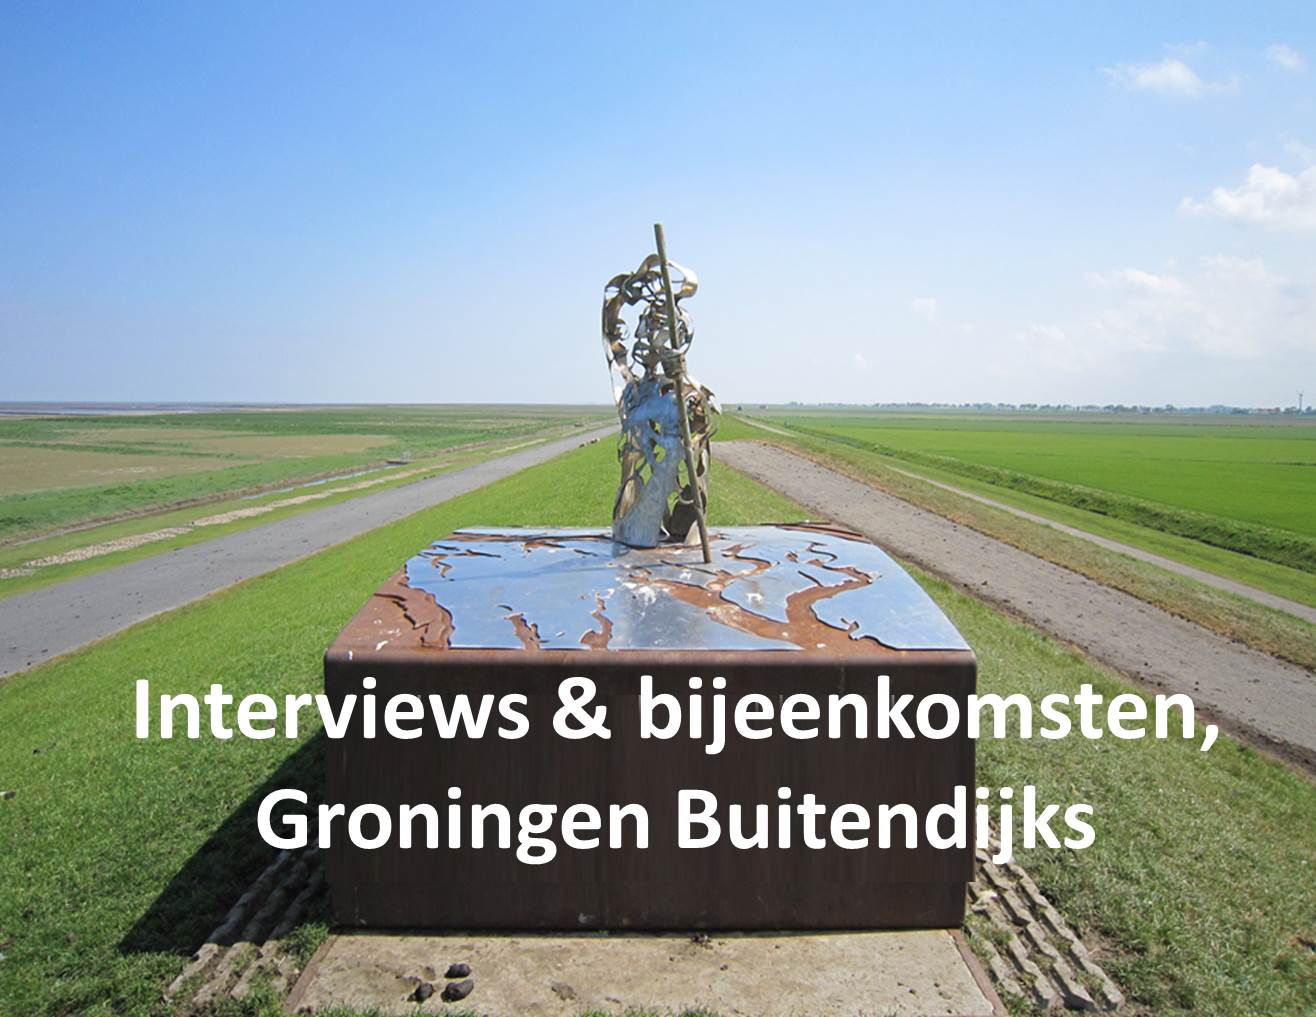 Interviews & bijeenkomsten, Groningen Buitendijks